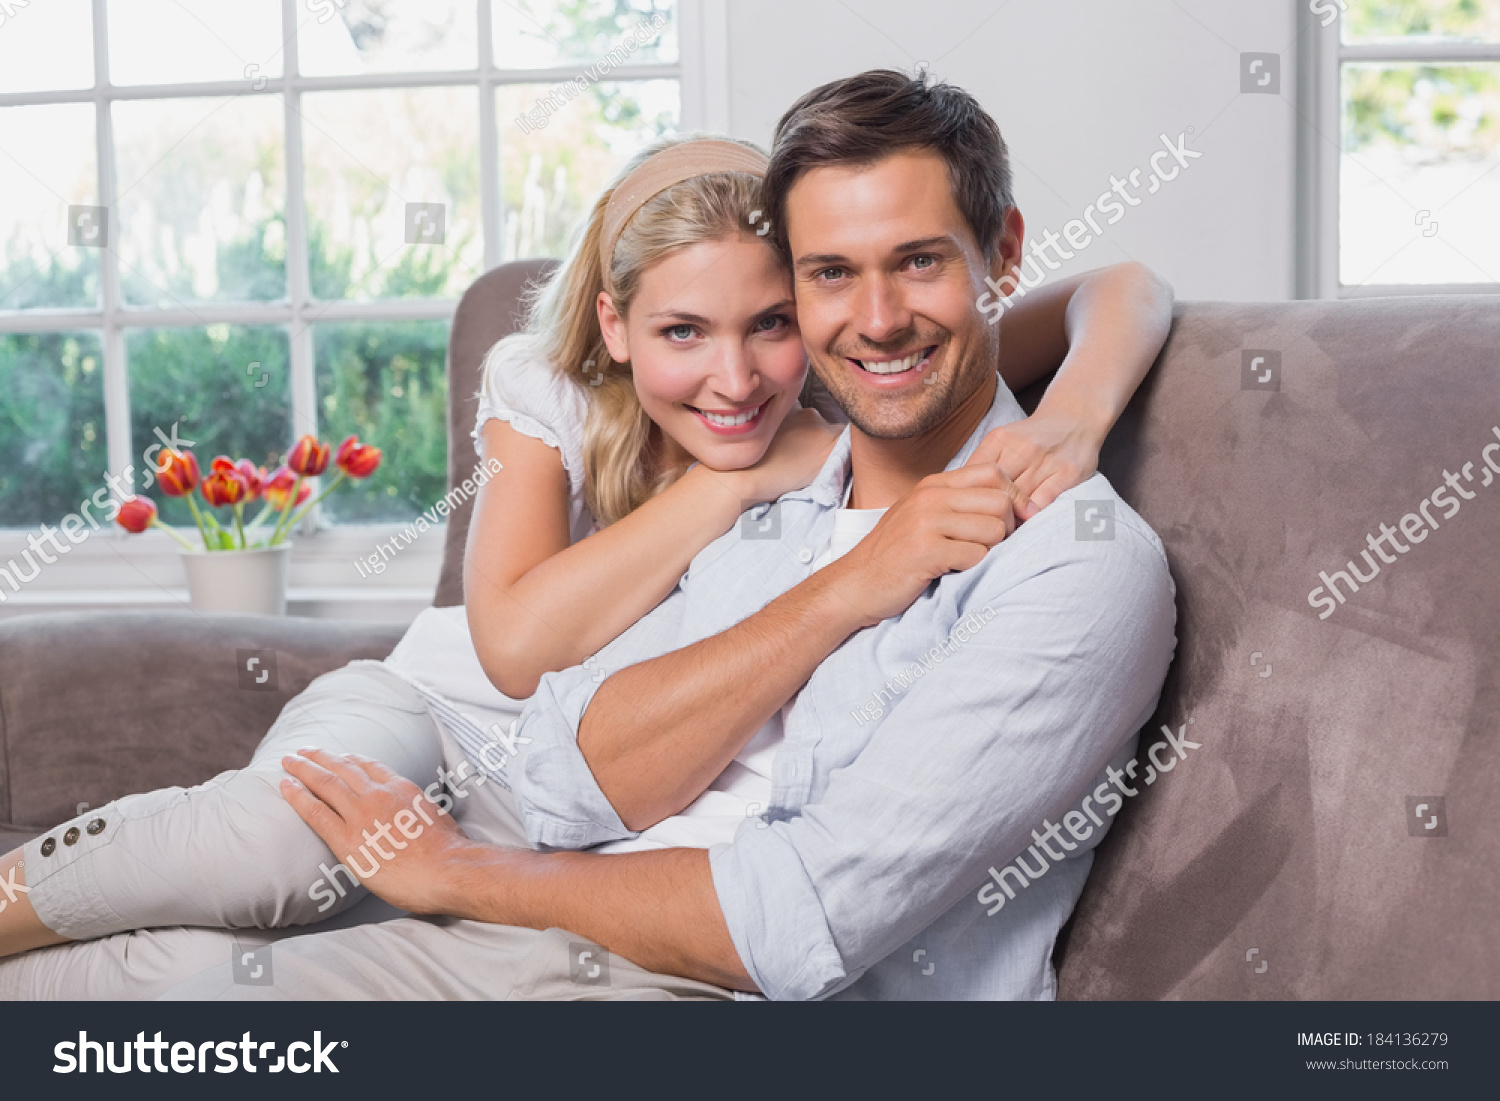 Влюбленные сидят на диване